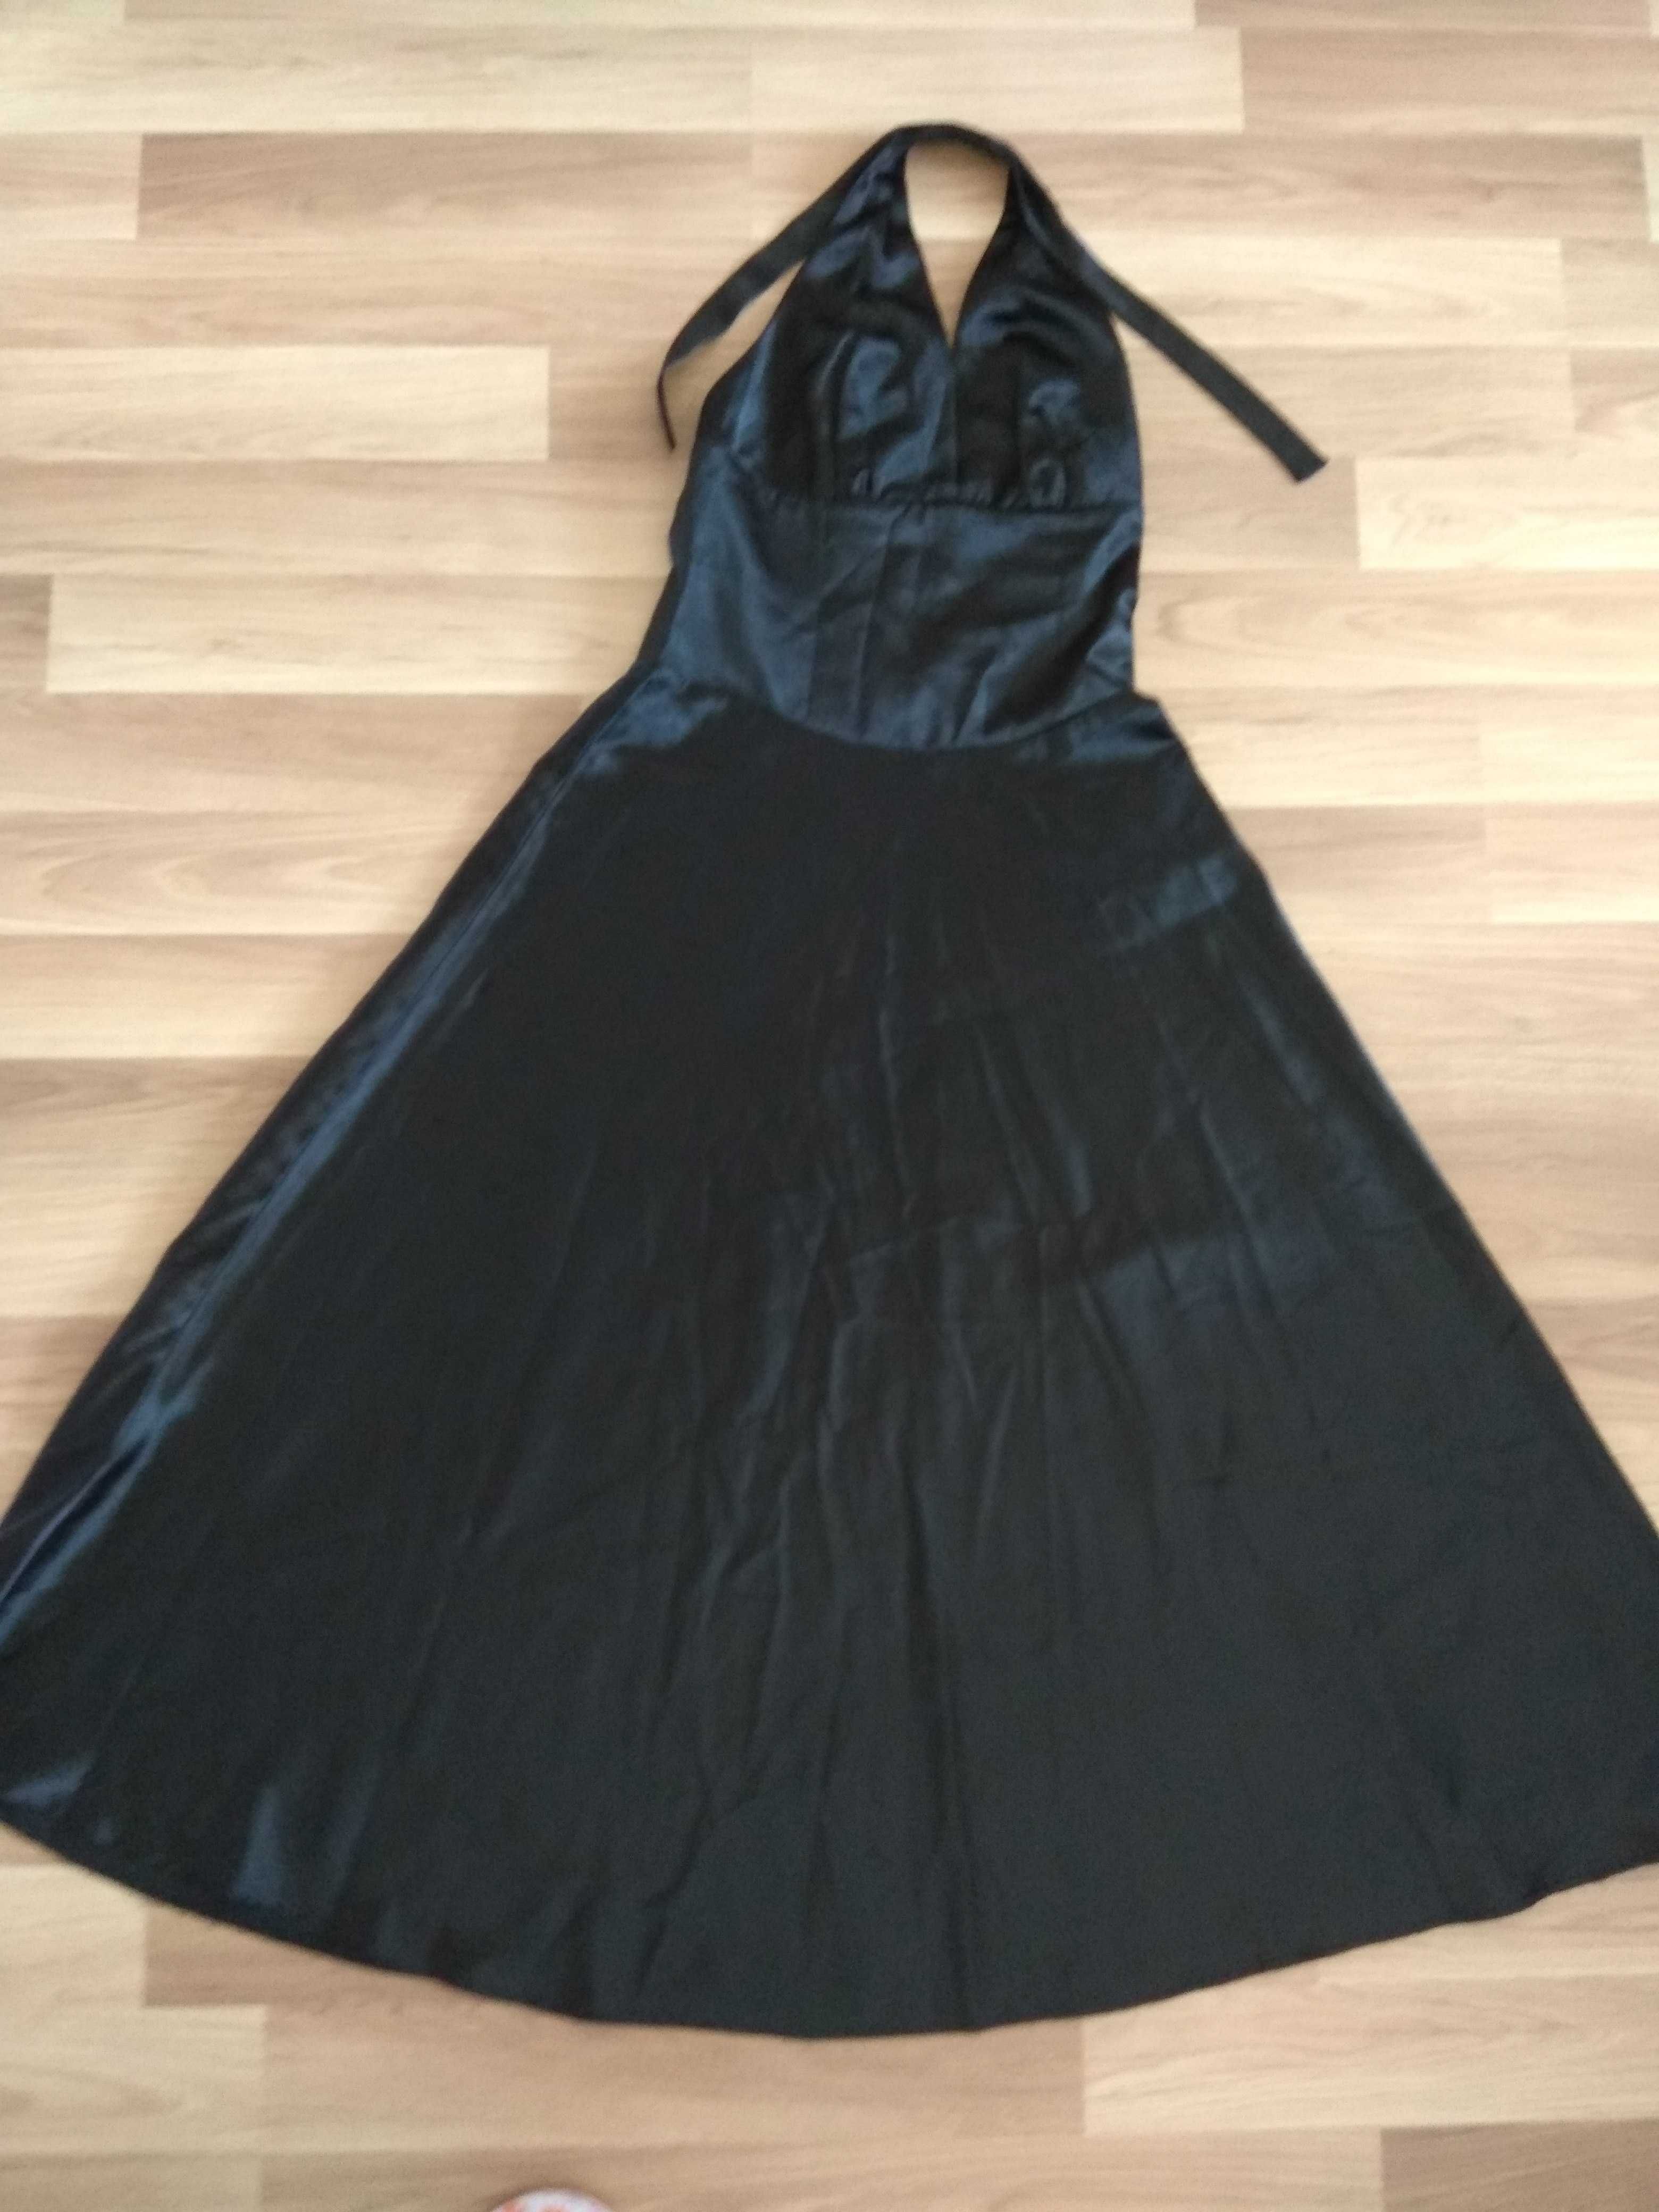 Suknia, atłas, sukienka czarna na bal, ślub, sylwestra, błyszcząca 38